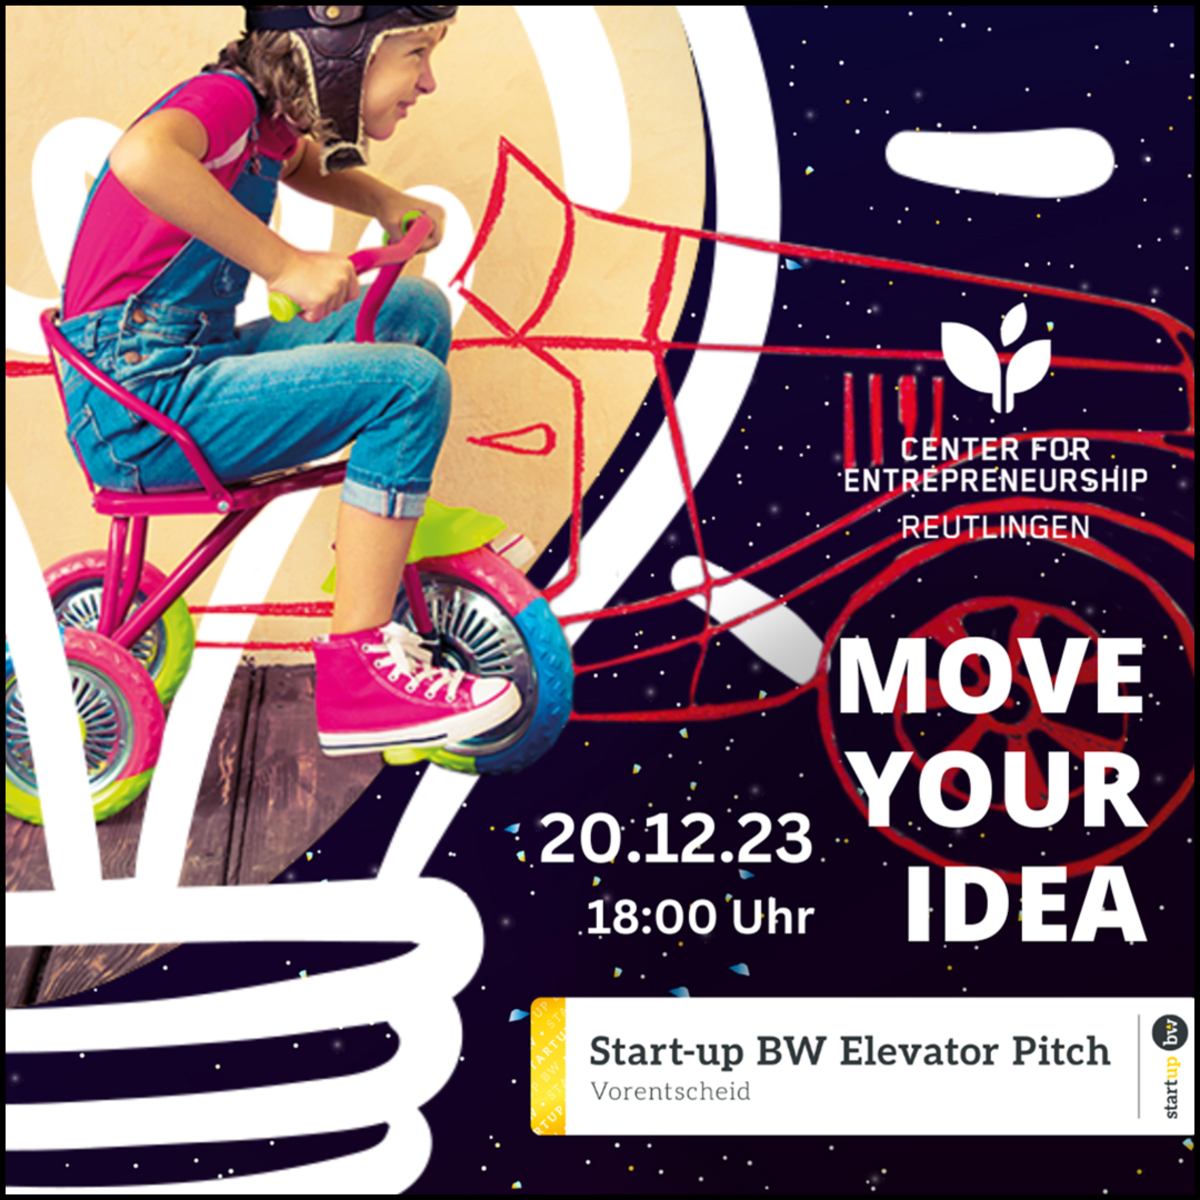 Termin Kachel Start-up BW Elevator Pitch 2024: Move Your Idea Ideenwettbewerb am 20.12.2023. Bild verlinkt direkt auf das Bewerbungsformular.